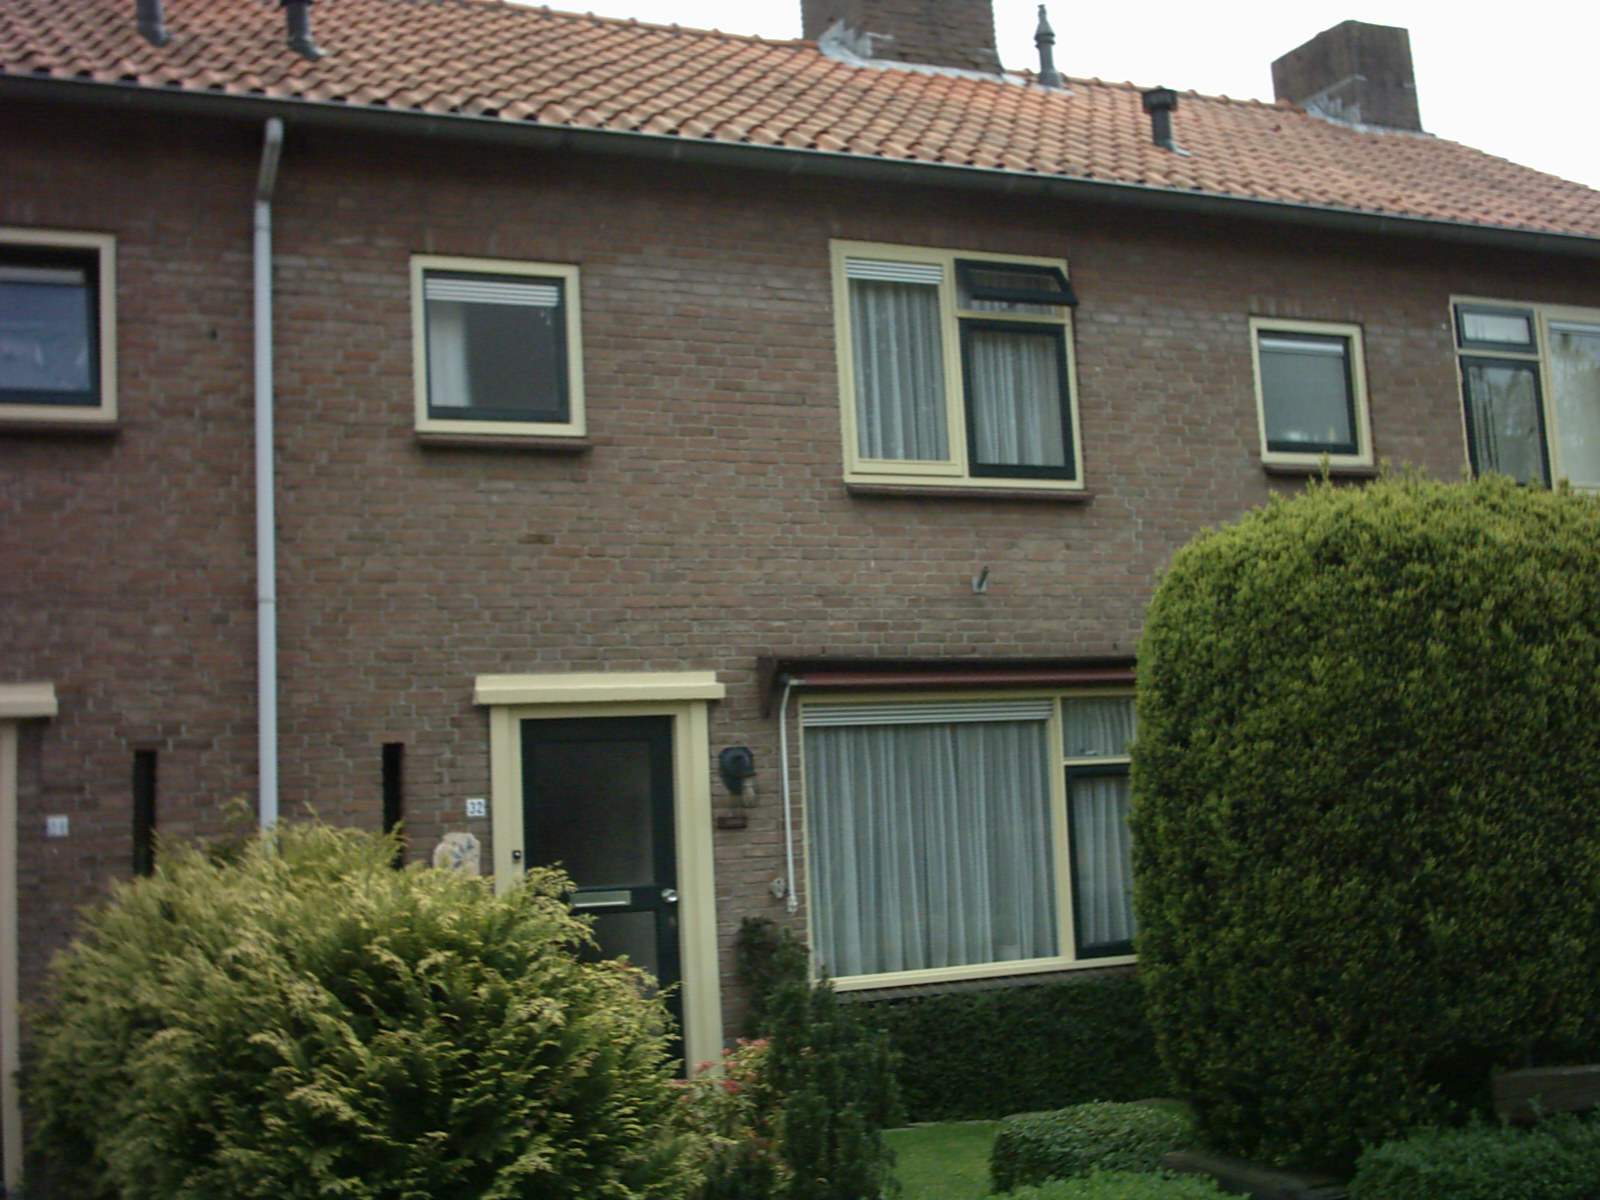 Meidoornstraat 32, 7213 WS Gorssel, Nederland